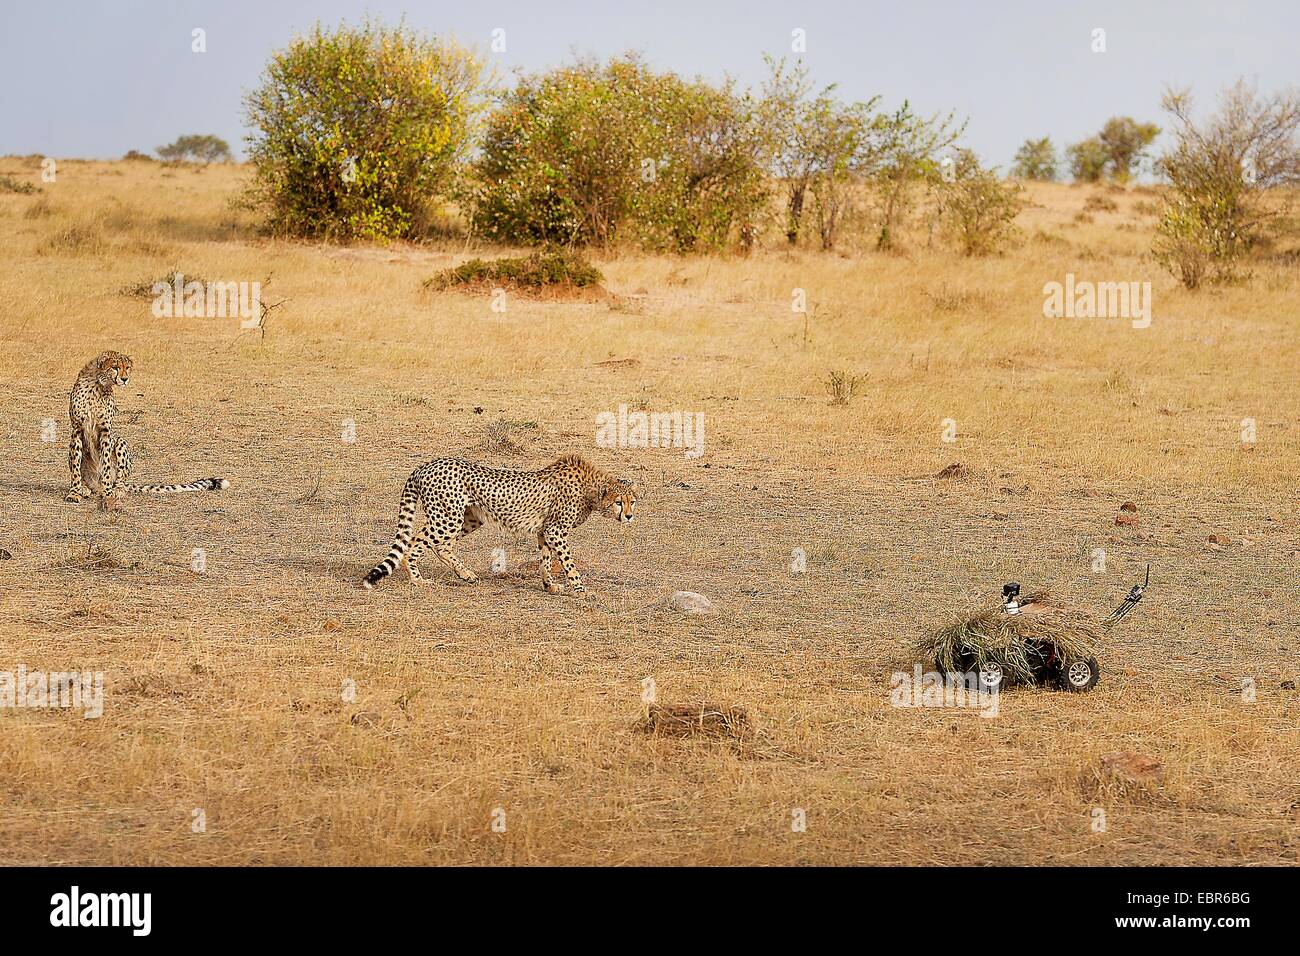 Le Guépard (Acinonyx jubatus), deux guépards regarde avec curiosité un appareil photo , Kenya, Samburu National Park Banque D'Images